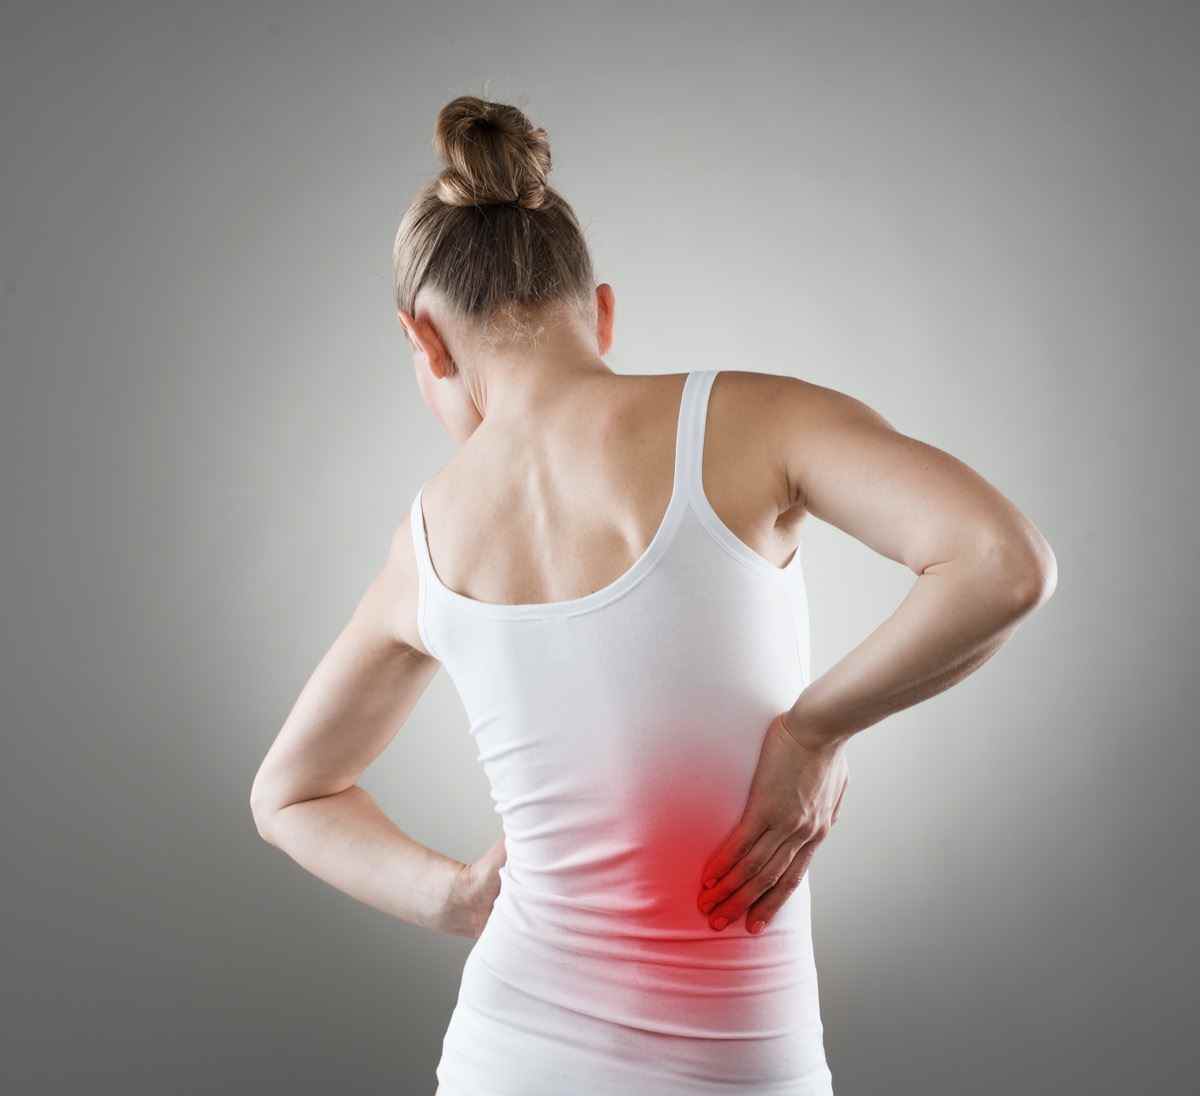 Schmerzen.  Chronische Nierenerkrankung, angezeigt durch einen roten Fleck am Körper der Frau.